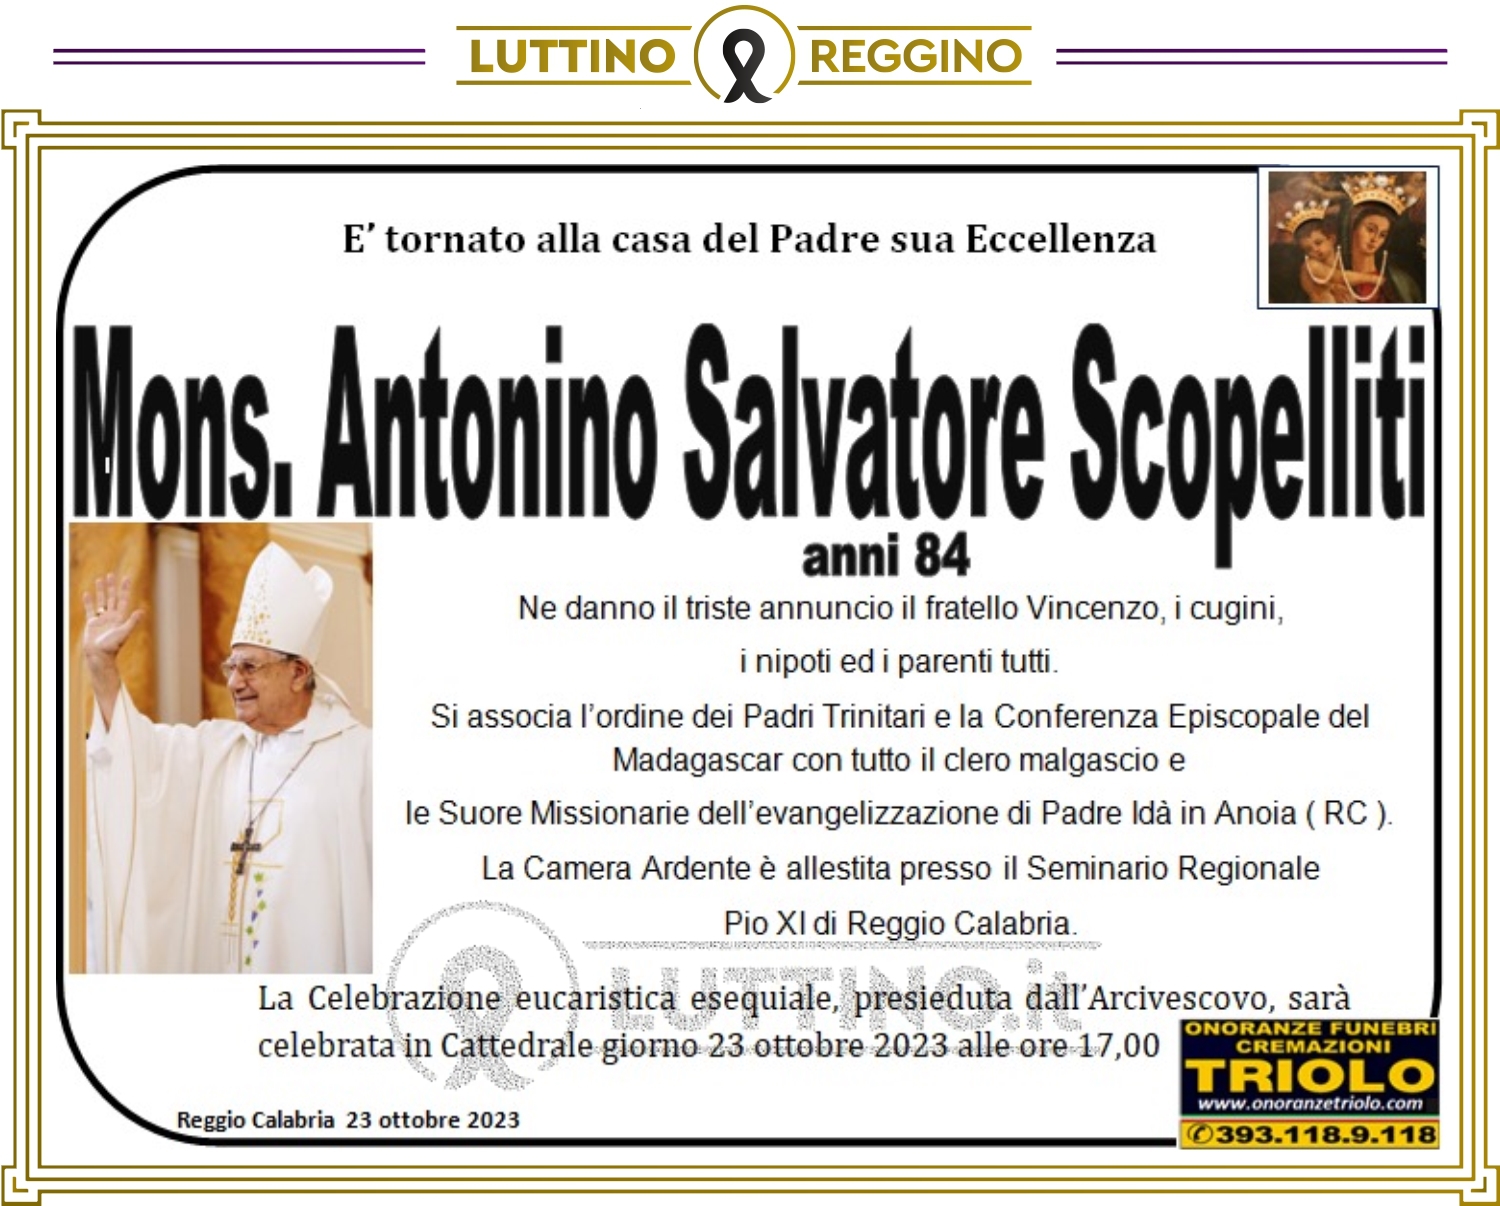 Mons. Antonino Salvatore Scopelliti